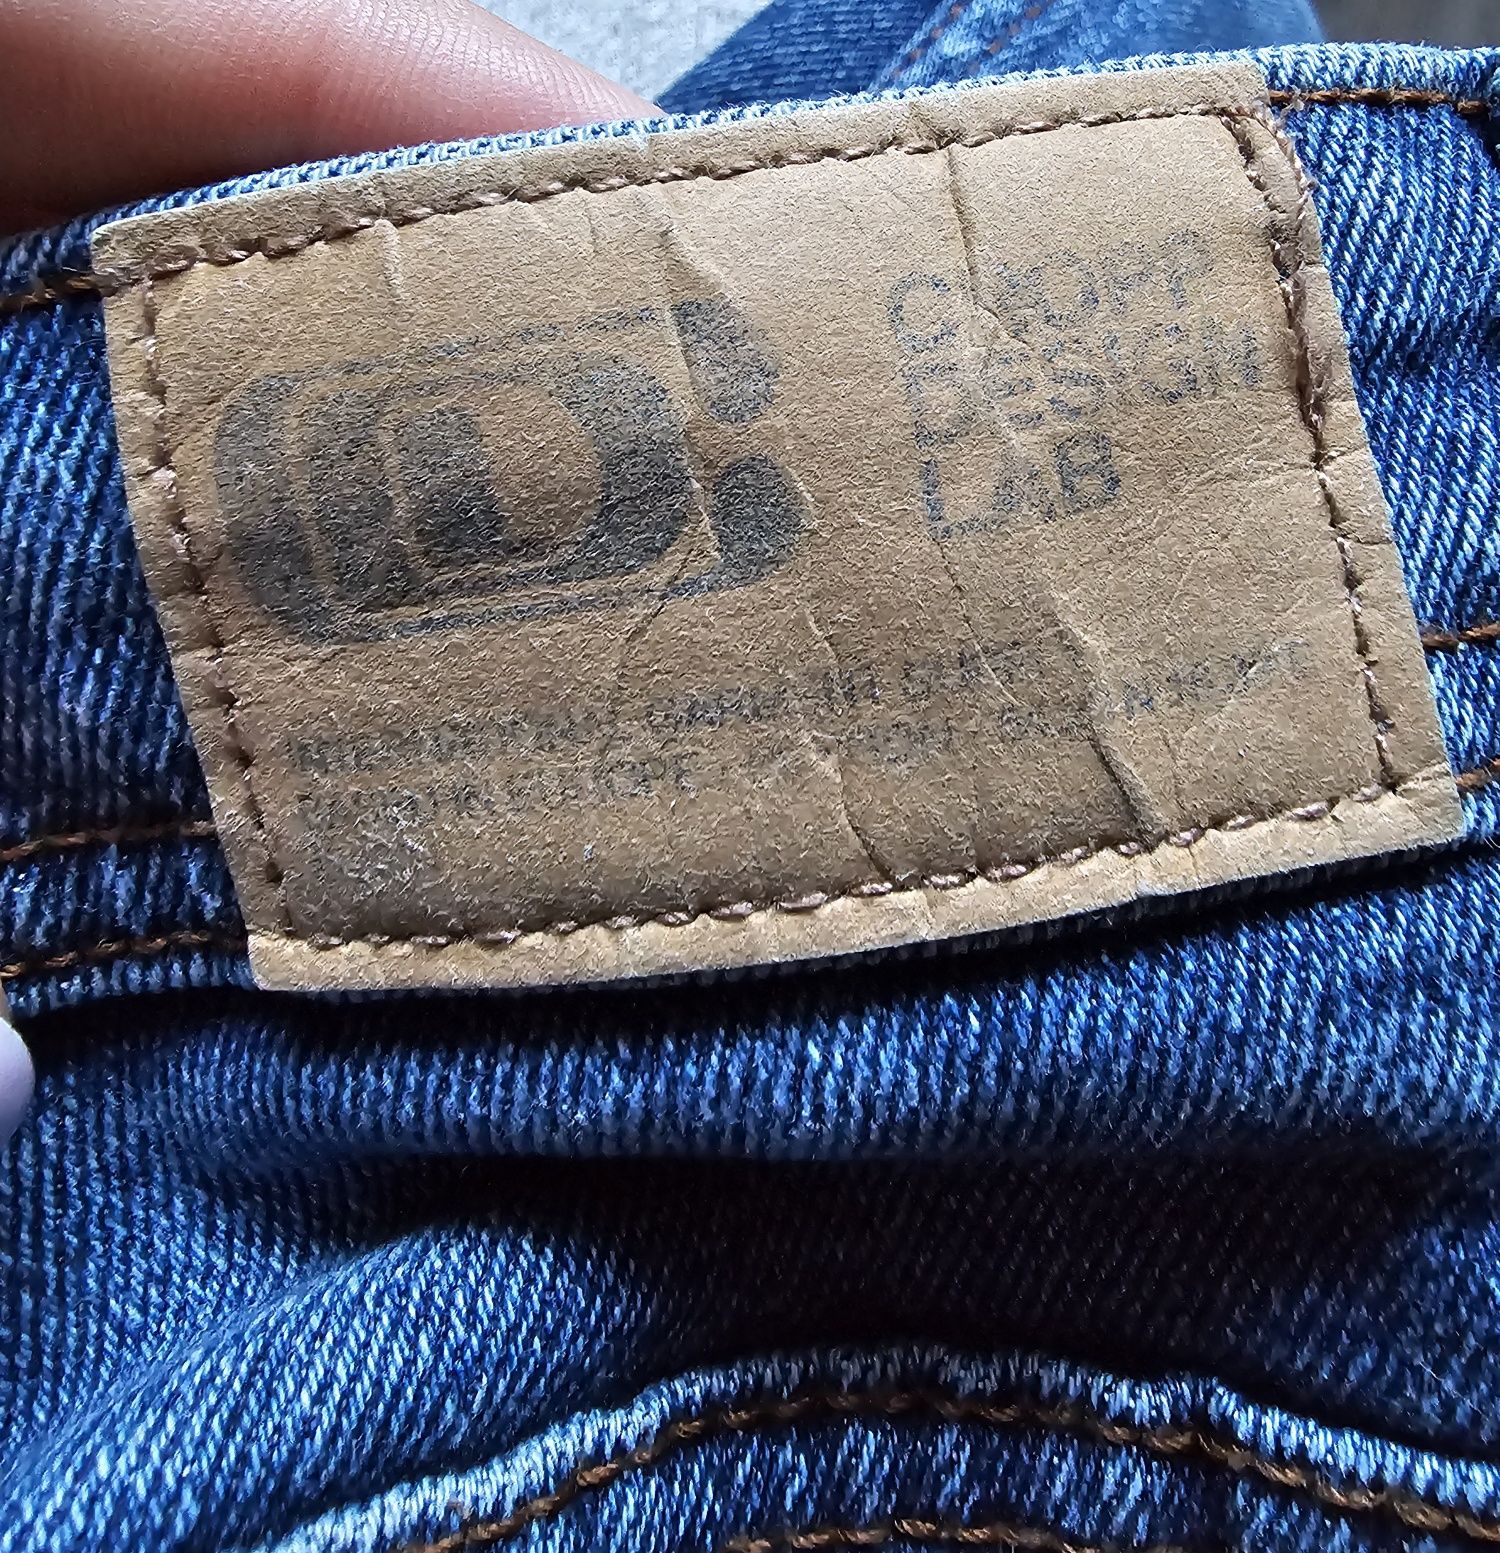 Spodnie jeansowe Cropp r.W28/L32